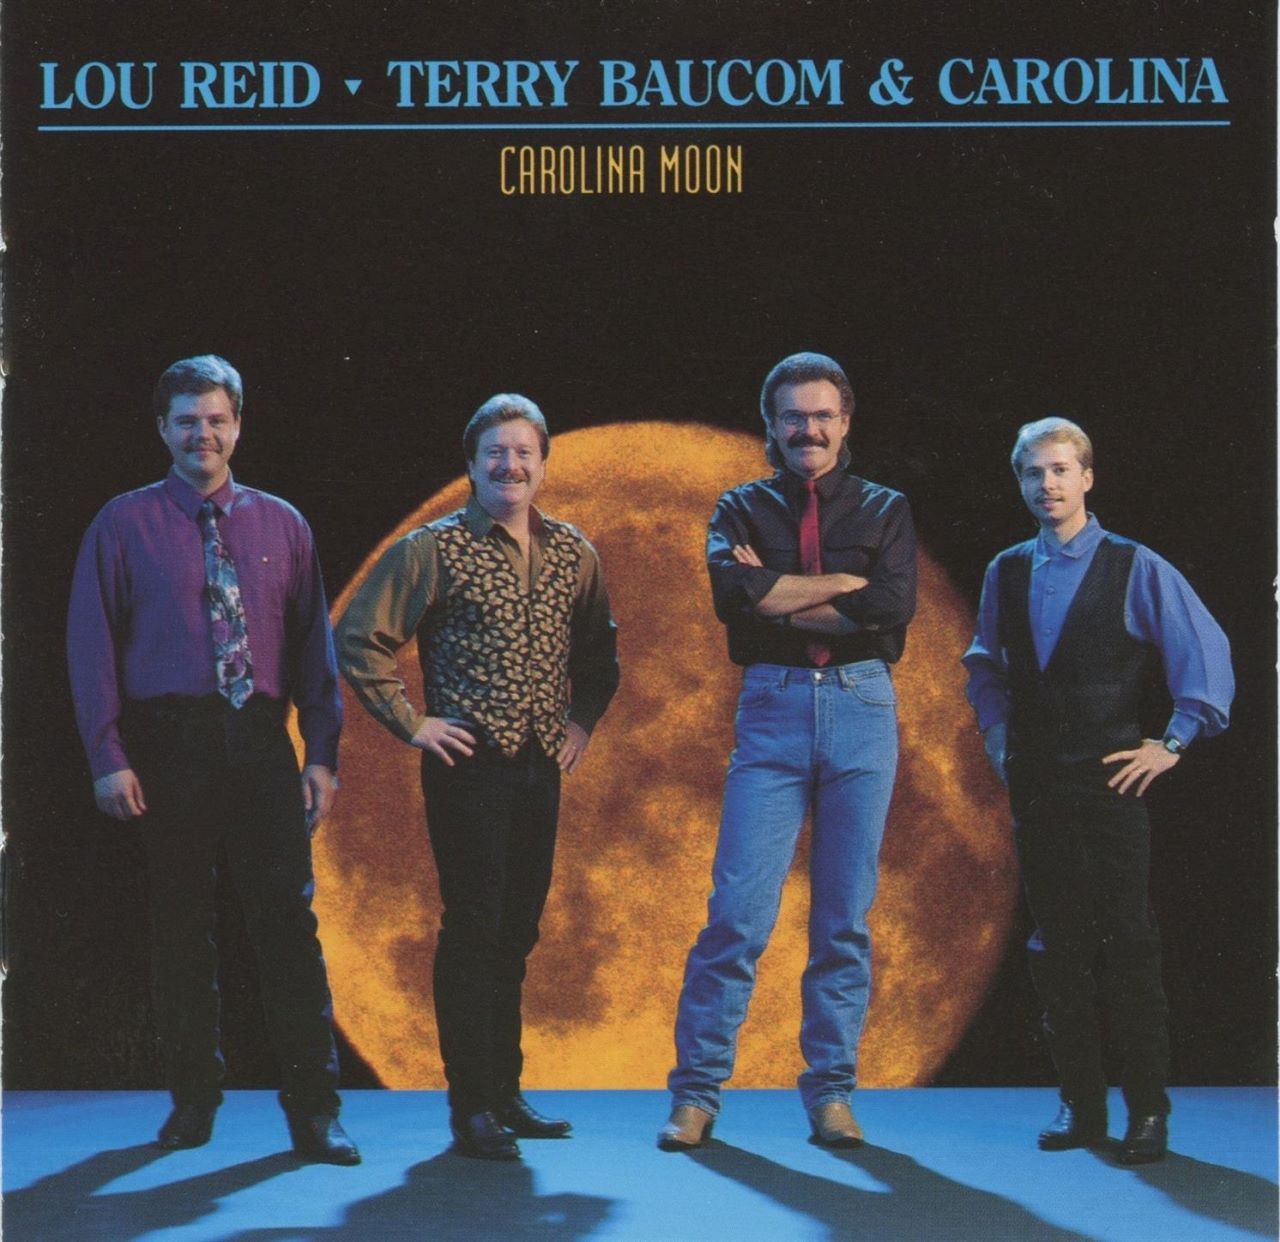 Lou Reid, Terry Baucom & Carolina - Carolina Moon cover album